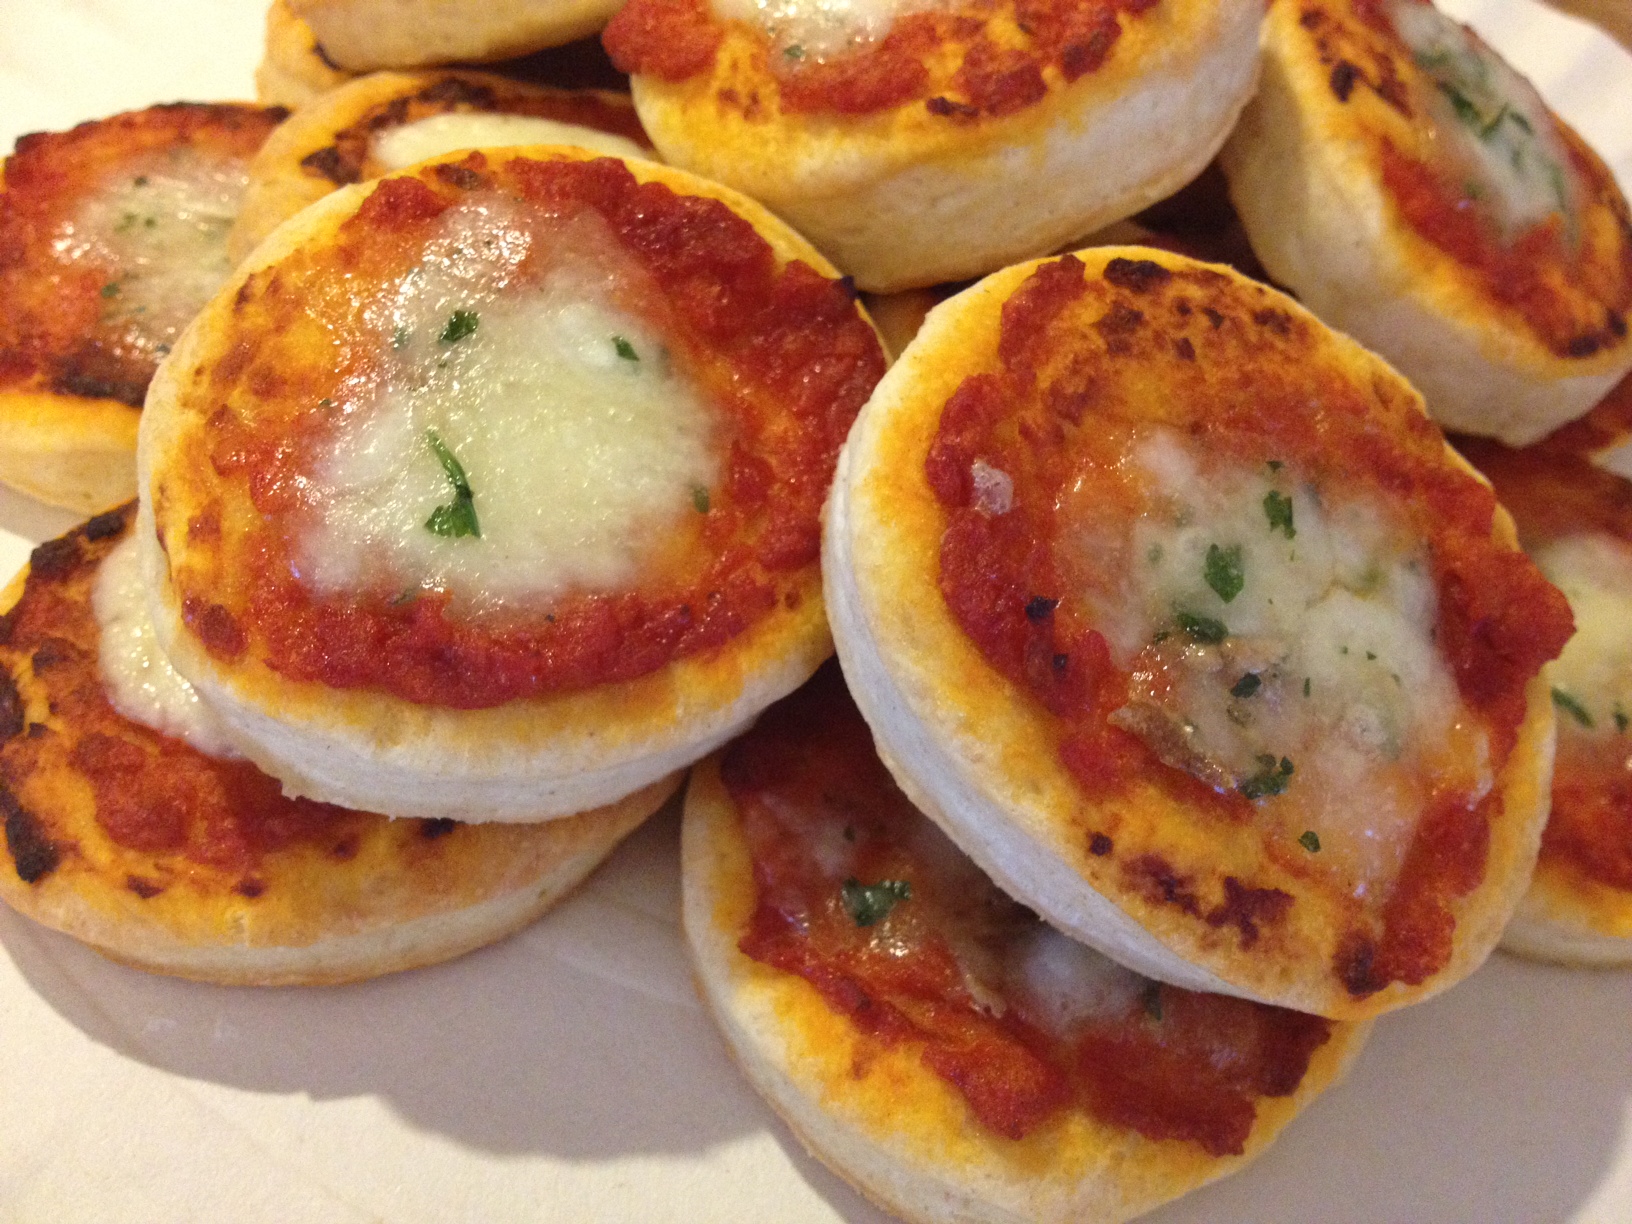 Ricetta pizzette: ingredienti, preparazione e consigli - Puglia24news